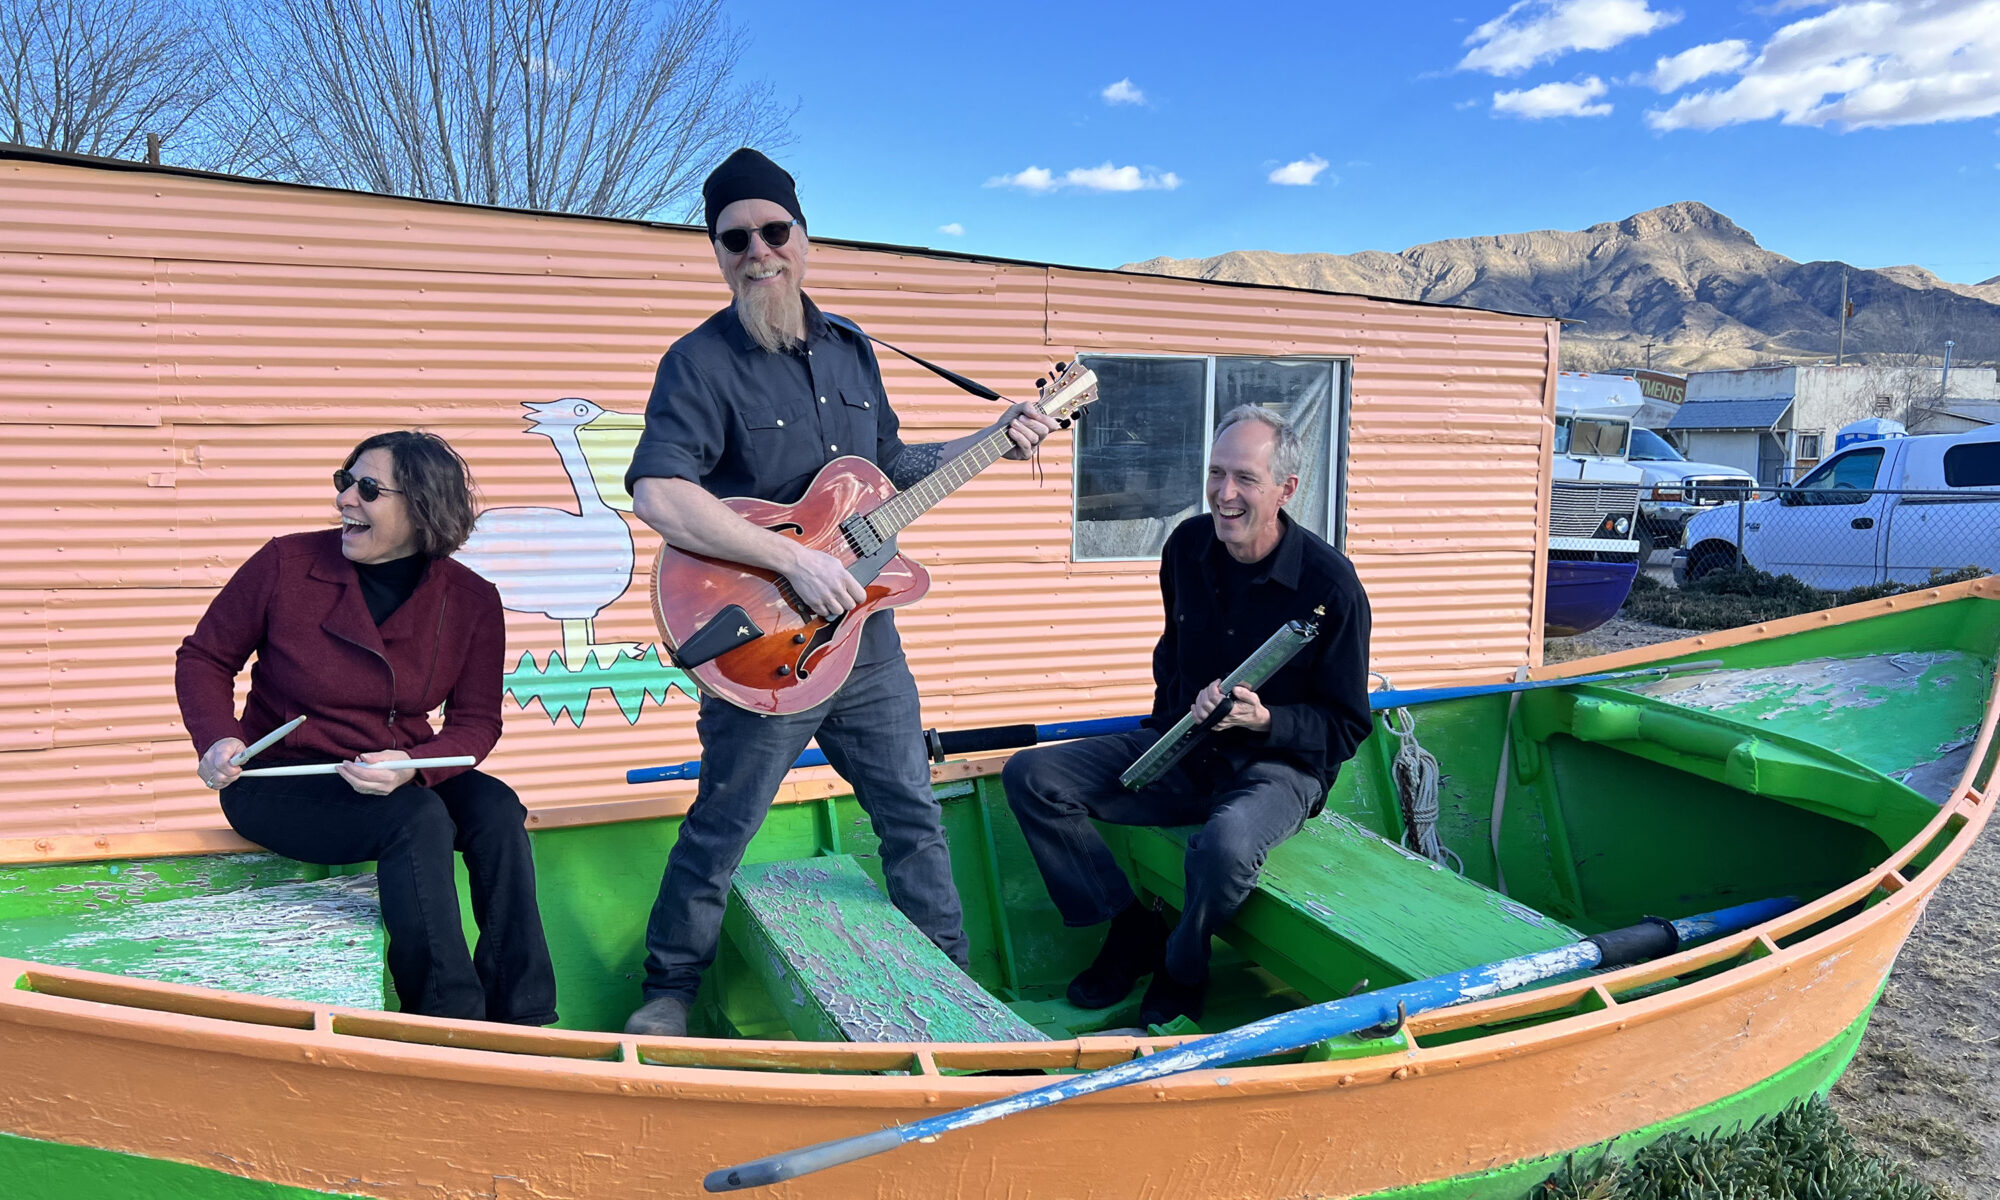 From left, Lauren Addario, Jonathan Mack, John Funkhouser sitting in a rowboat on dry land.